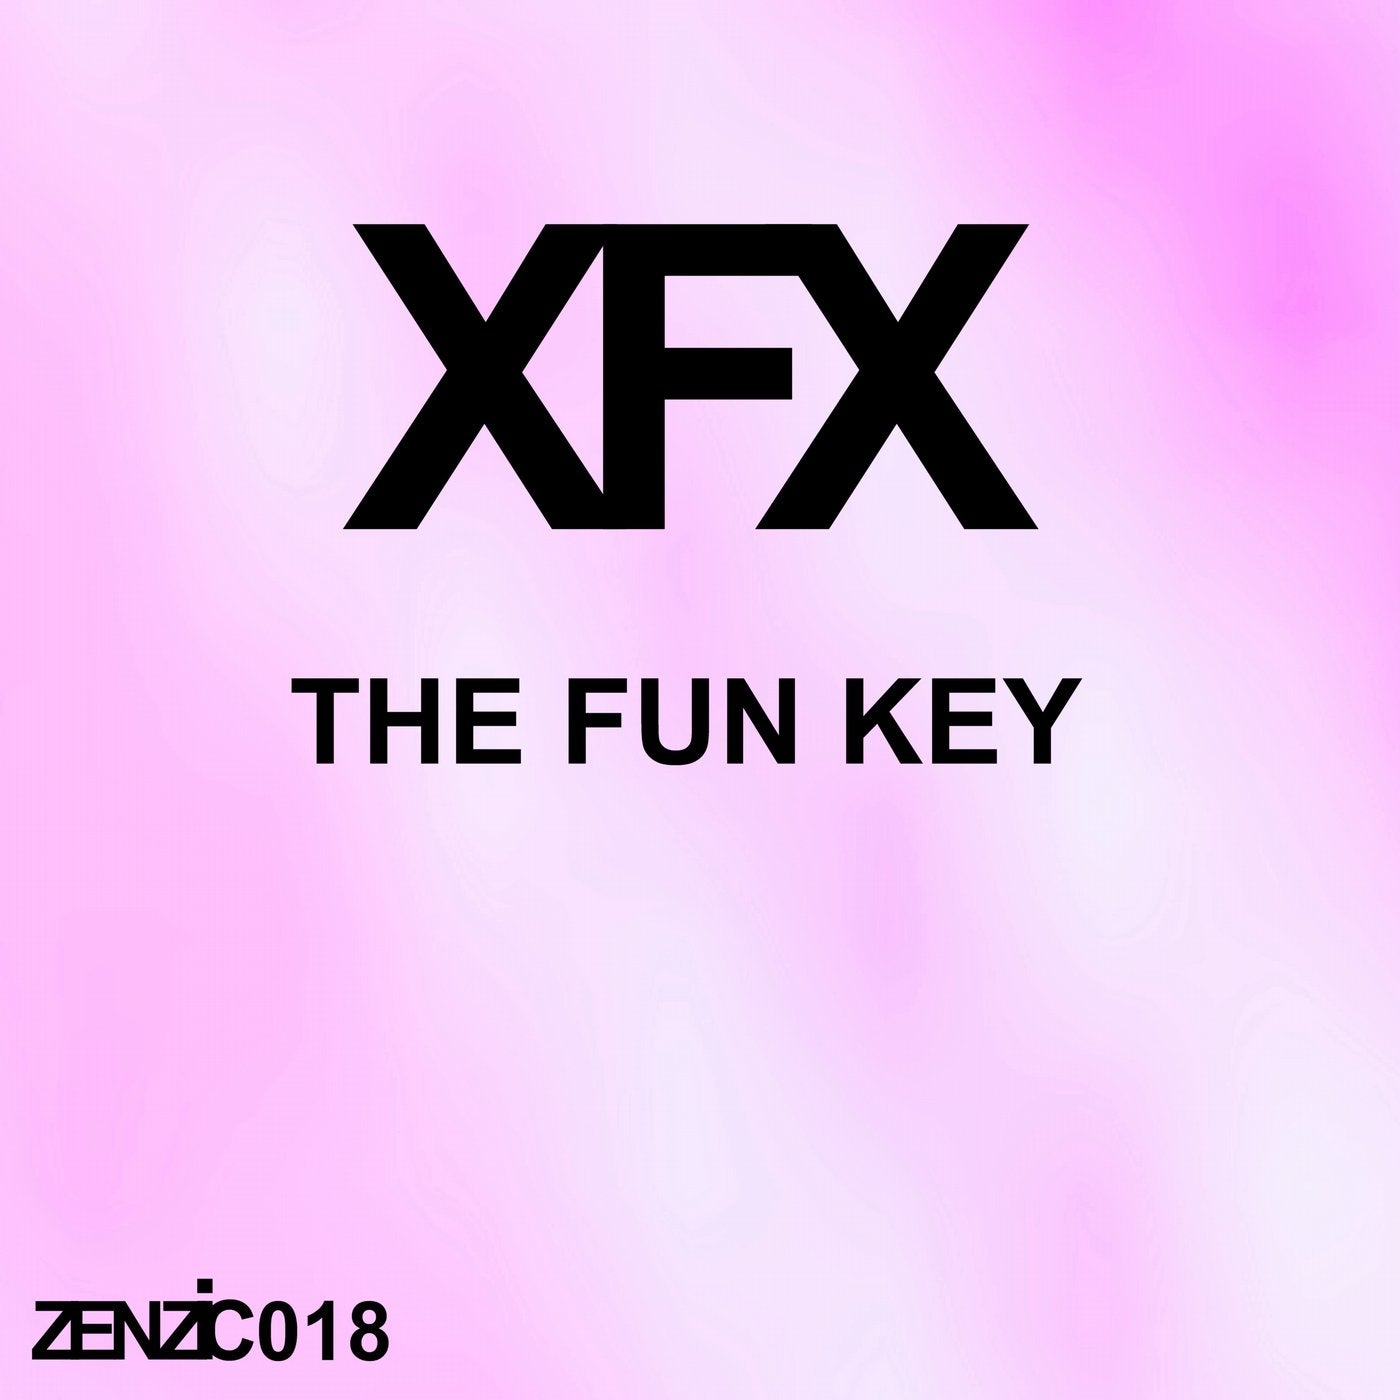 The Fun Key